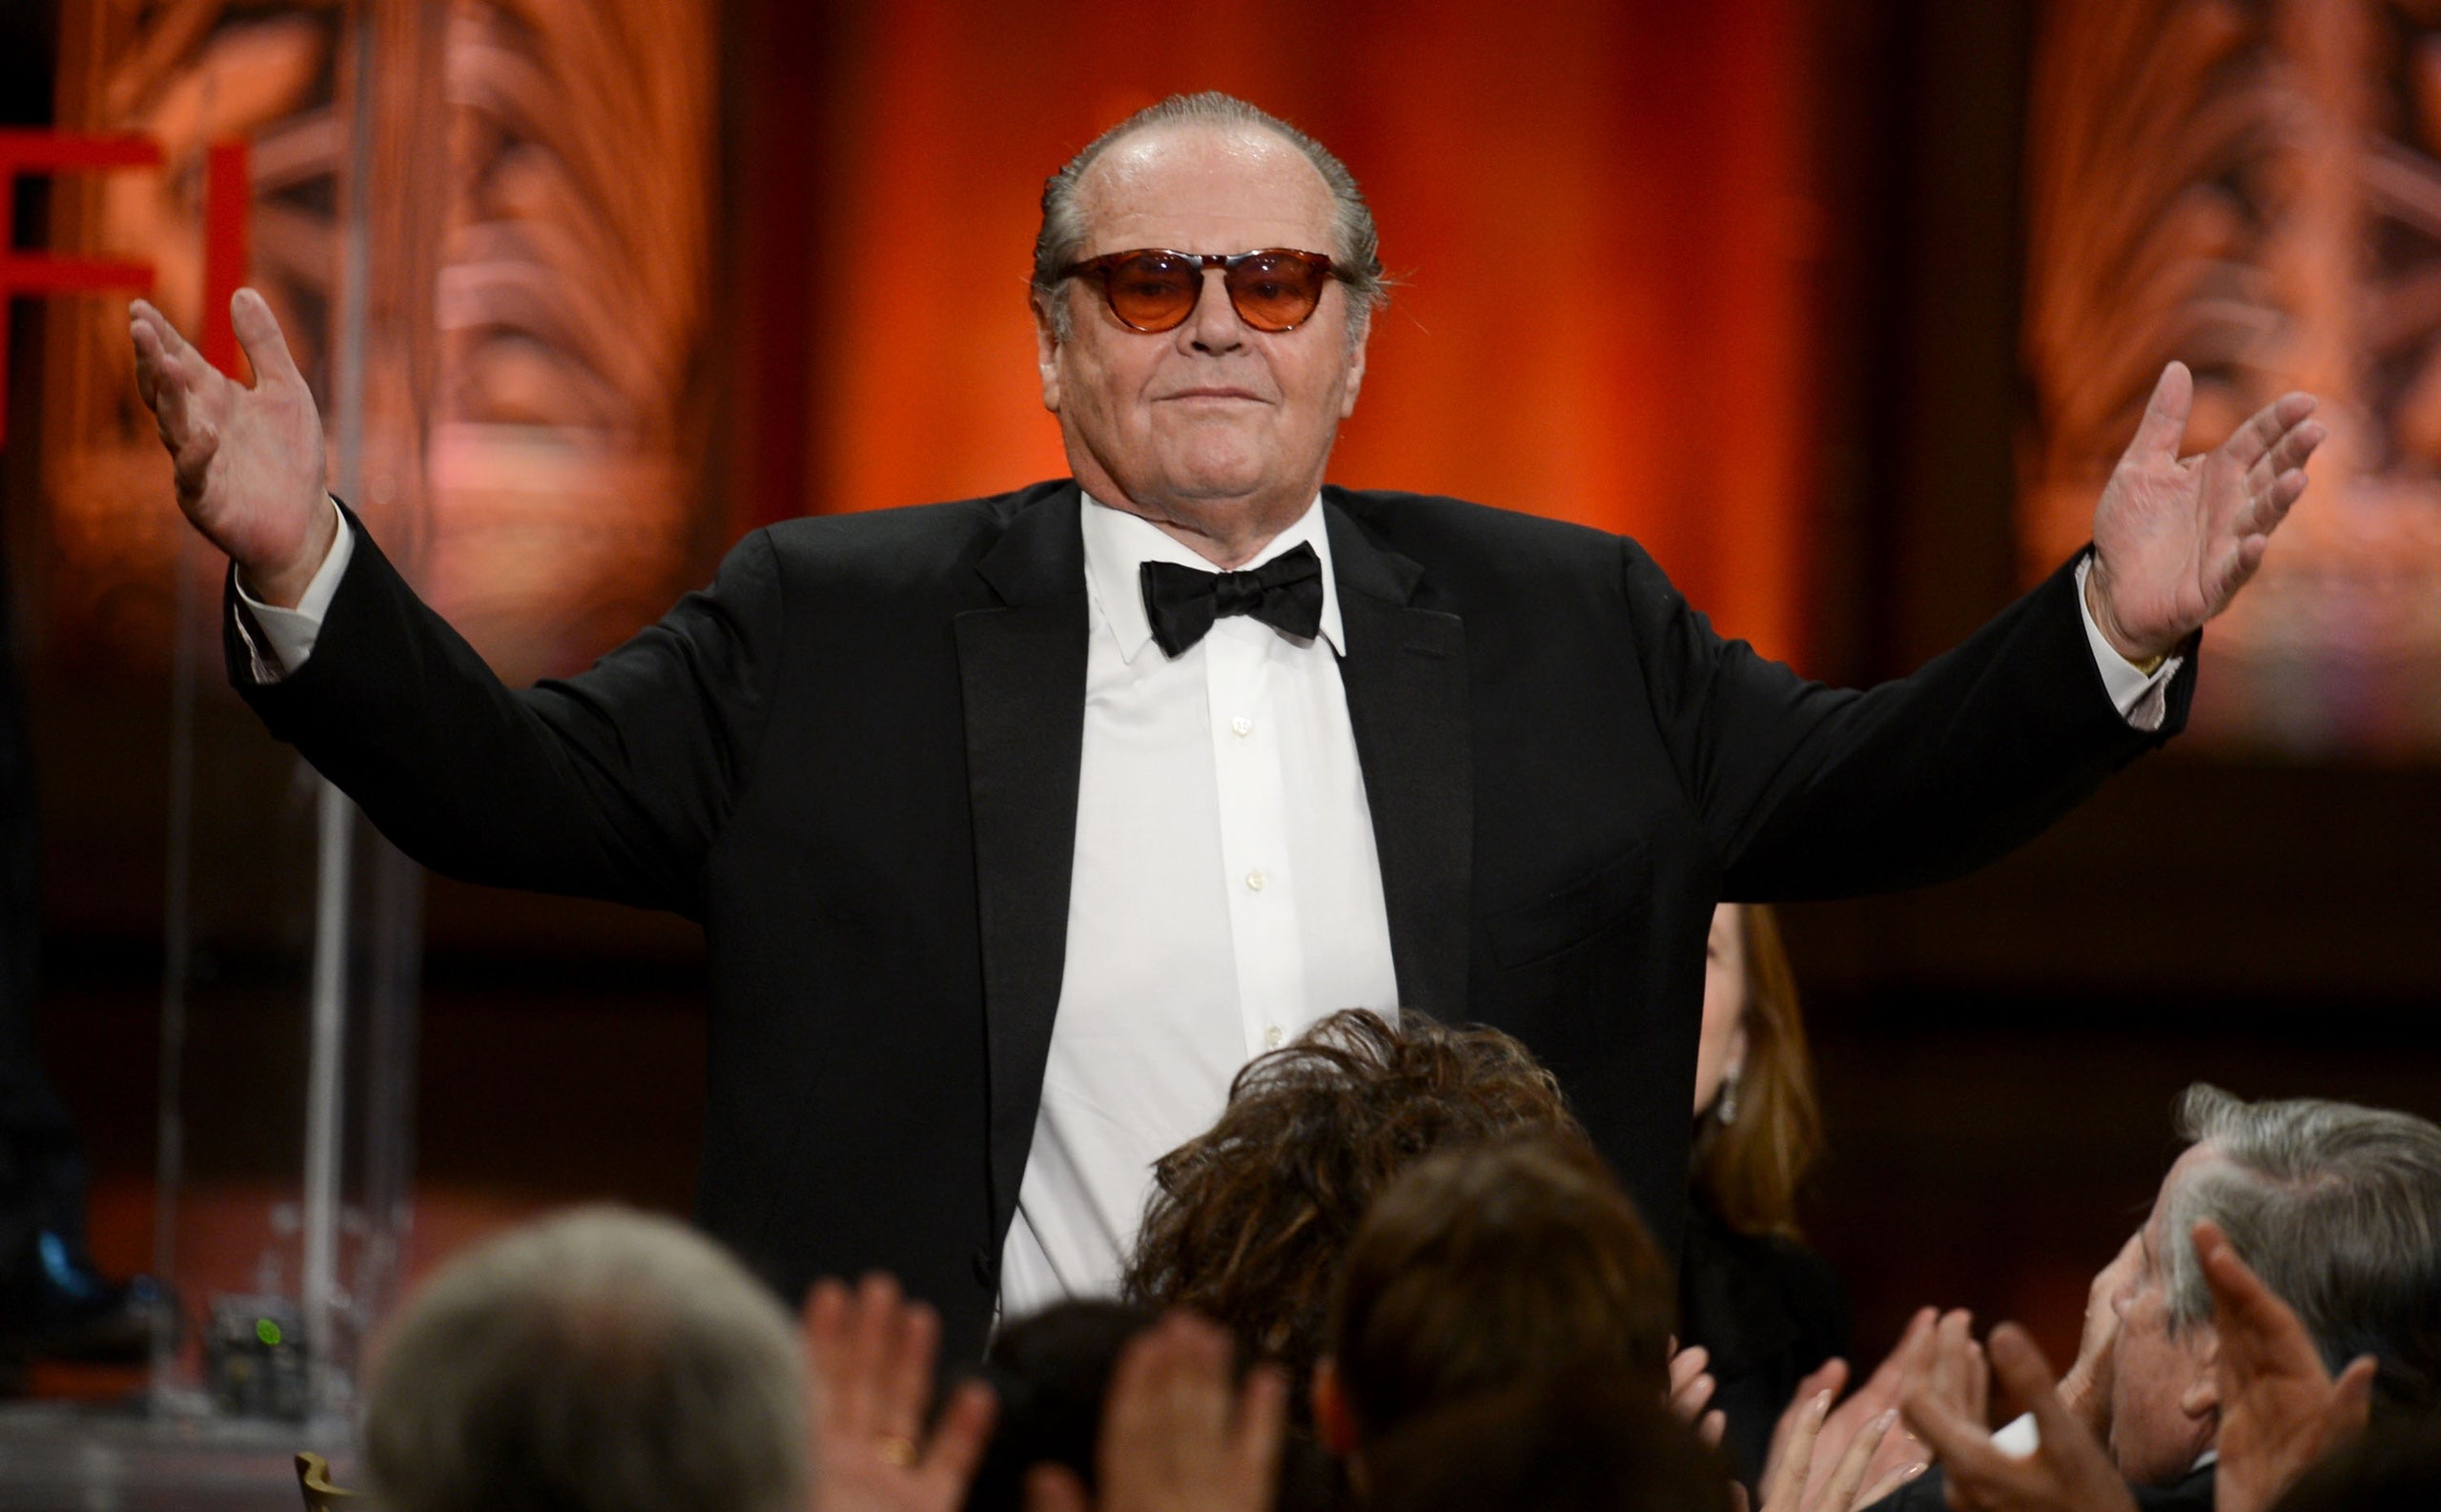 Jack Nicholson es visto en preocupante estado después de 18 meses desaparecido